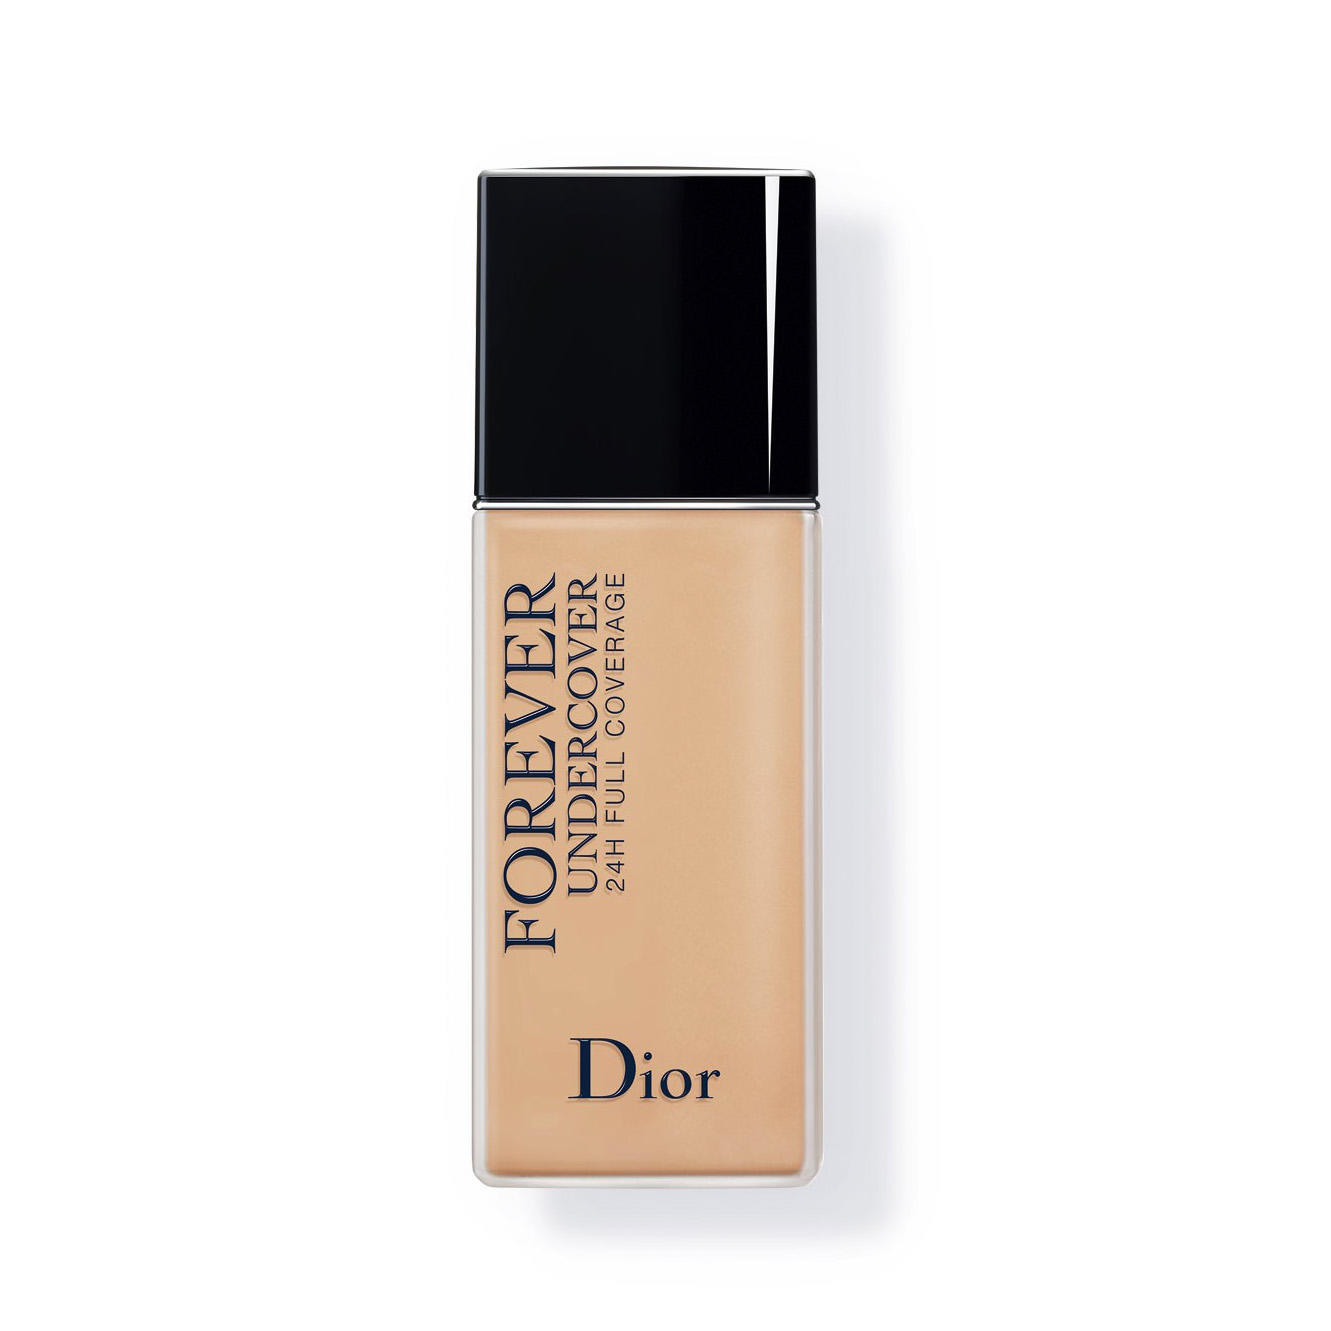 Dior Diorskin Forever Undercover Foundation Desert Beige 035